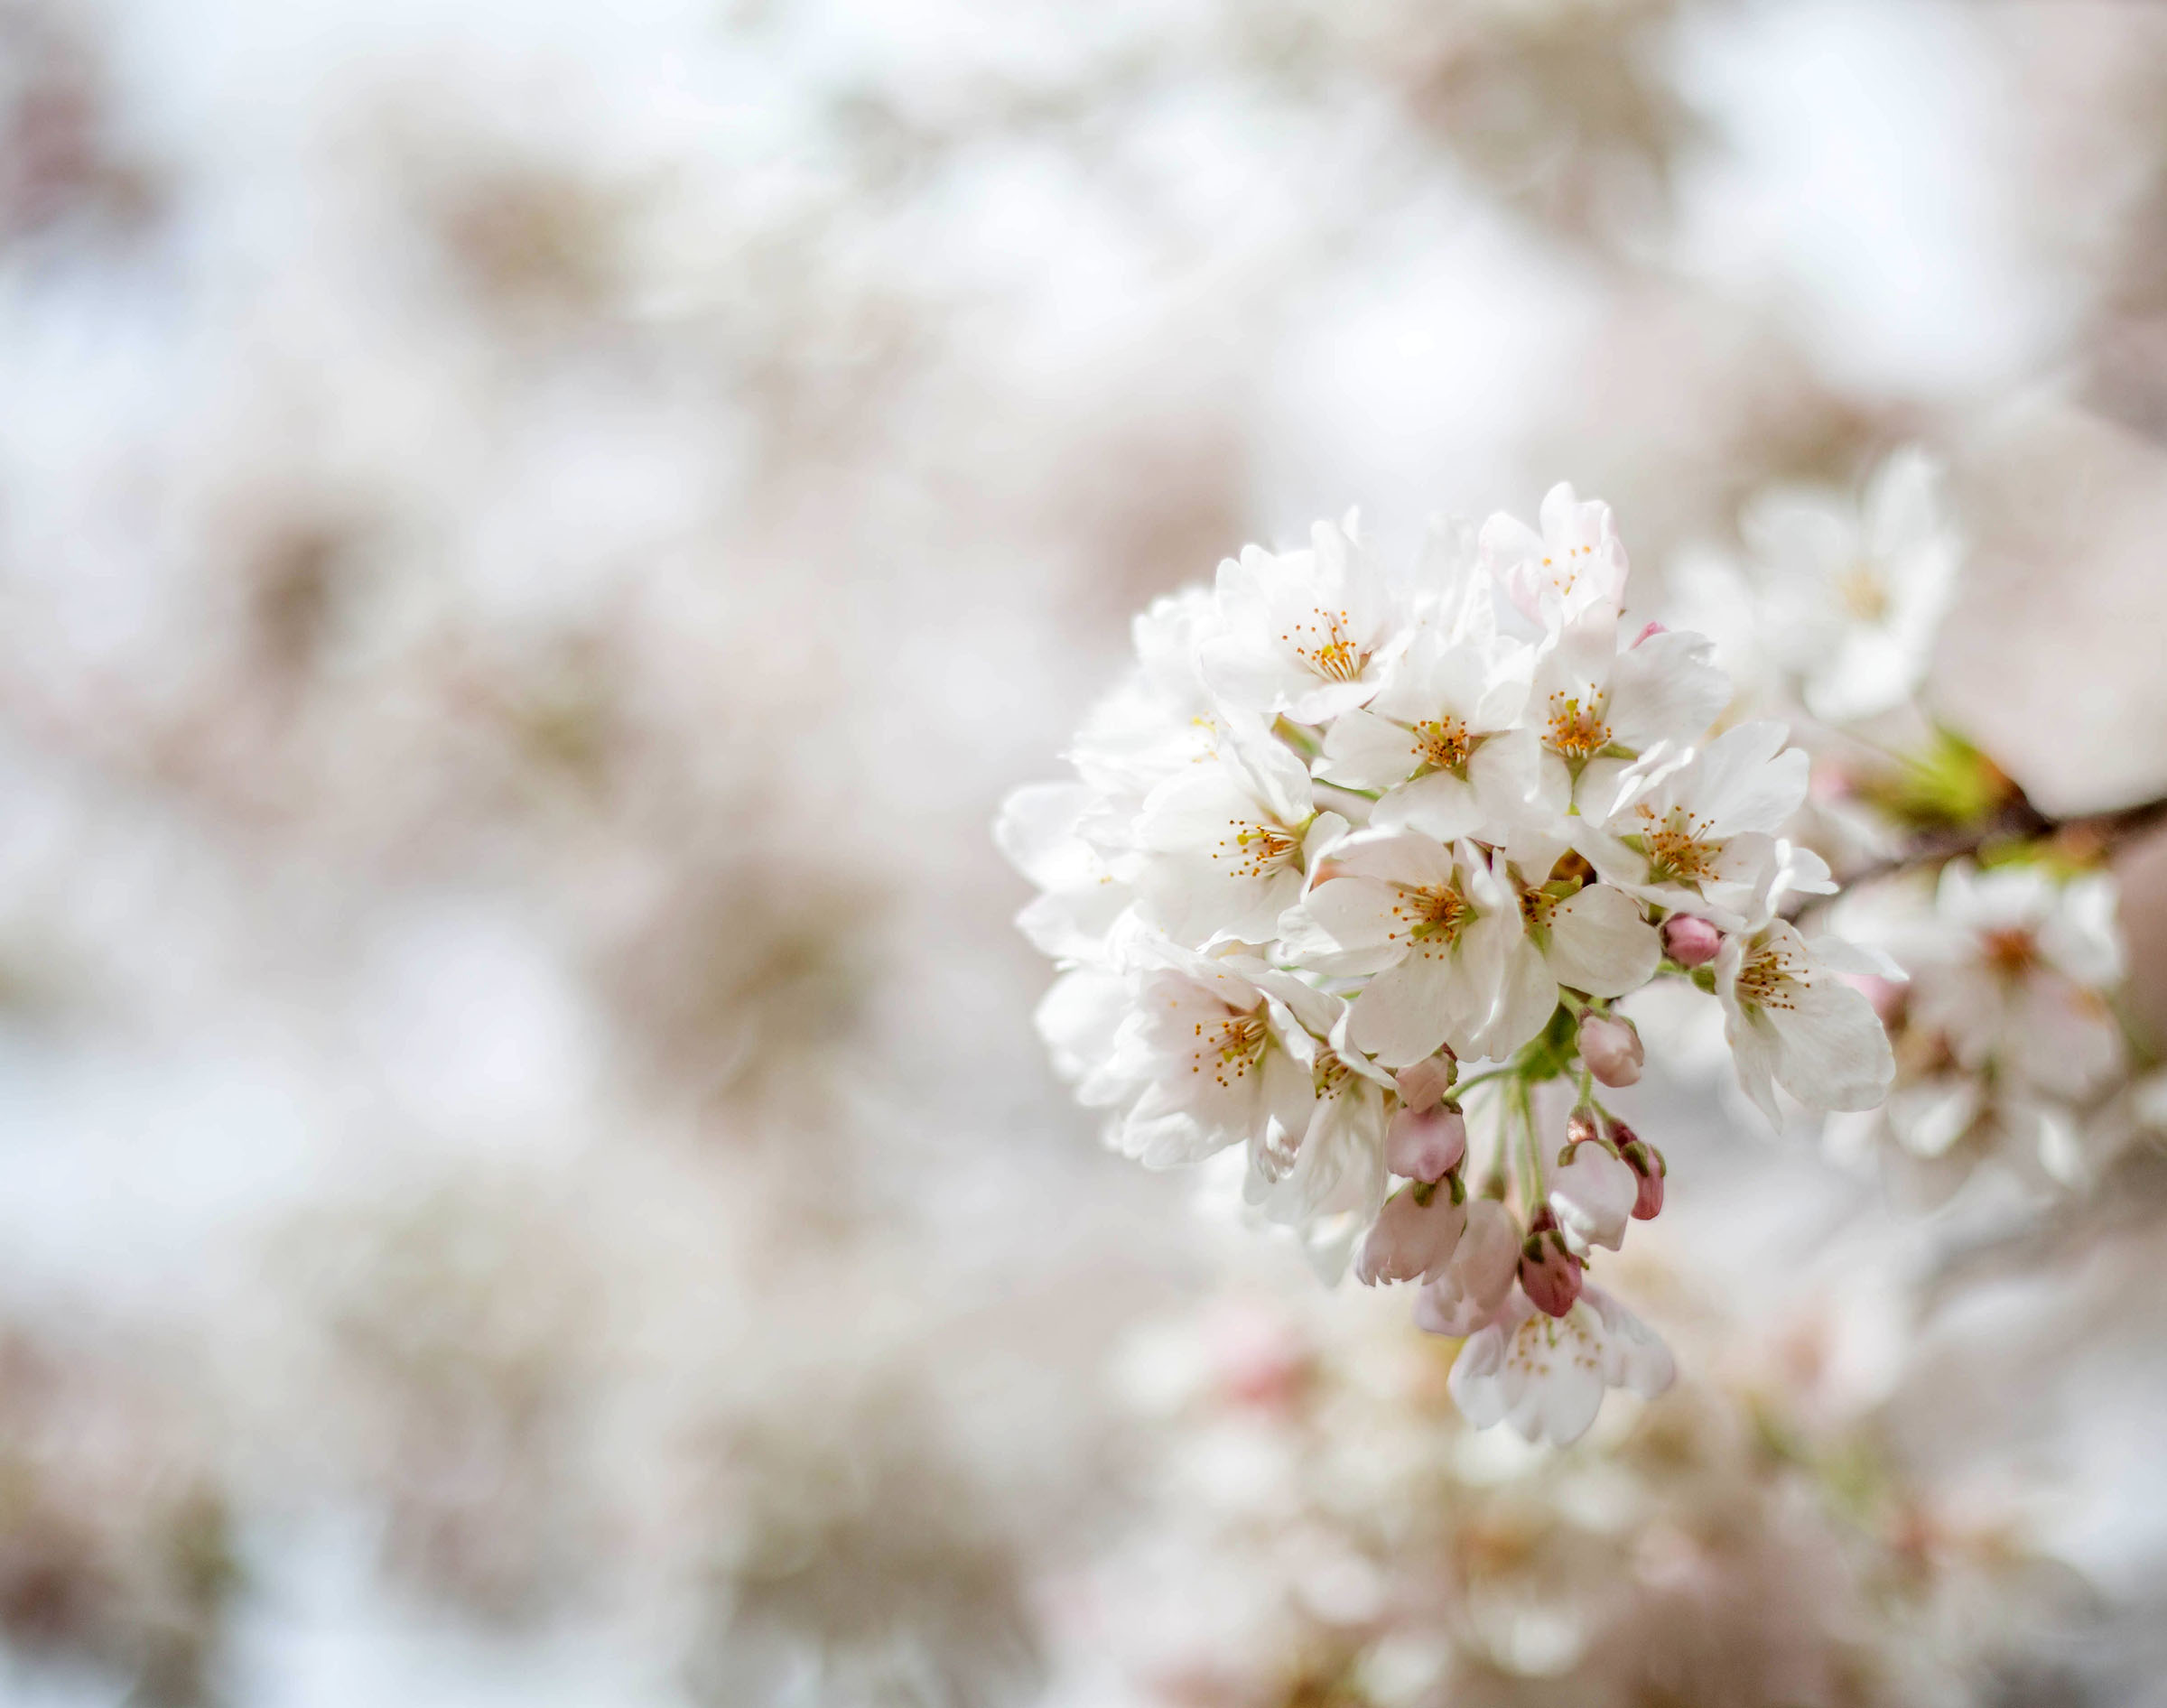 Closeup of a single cherry blossom